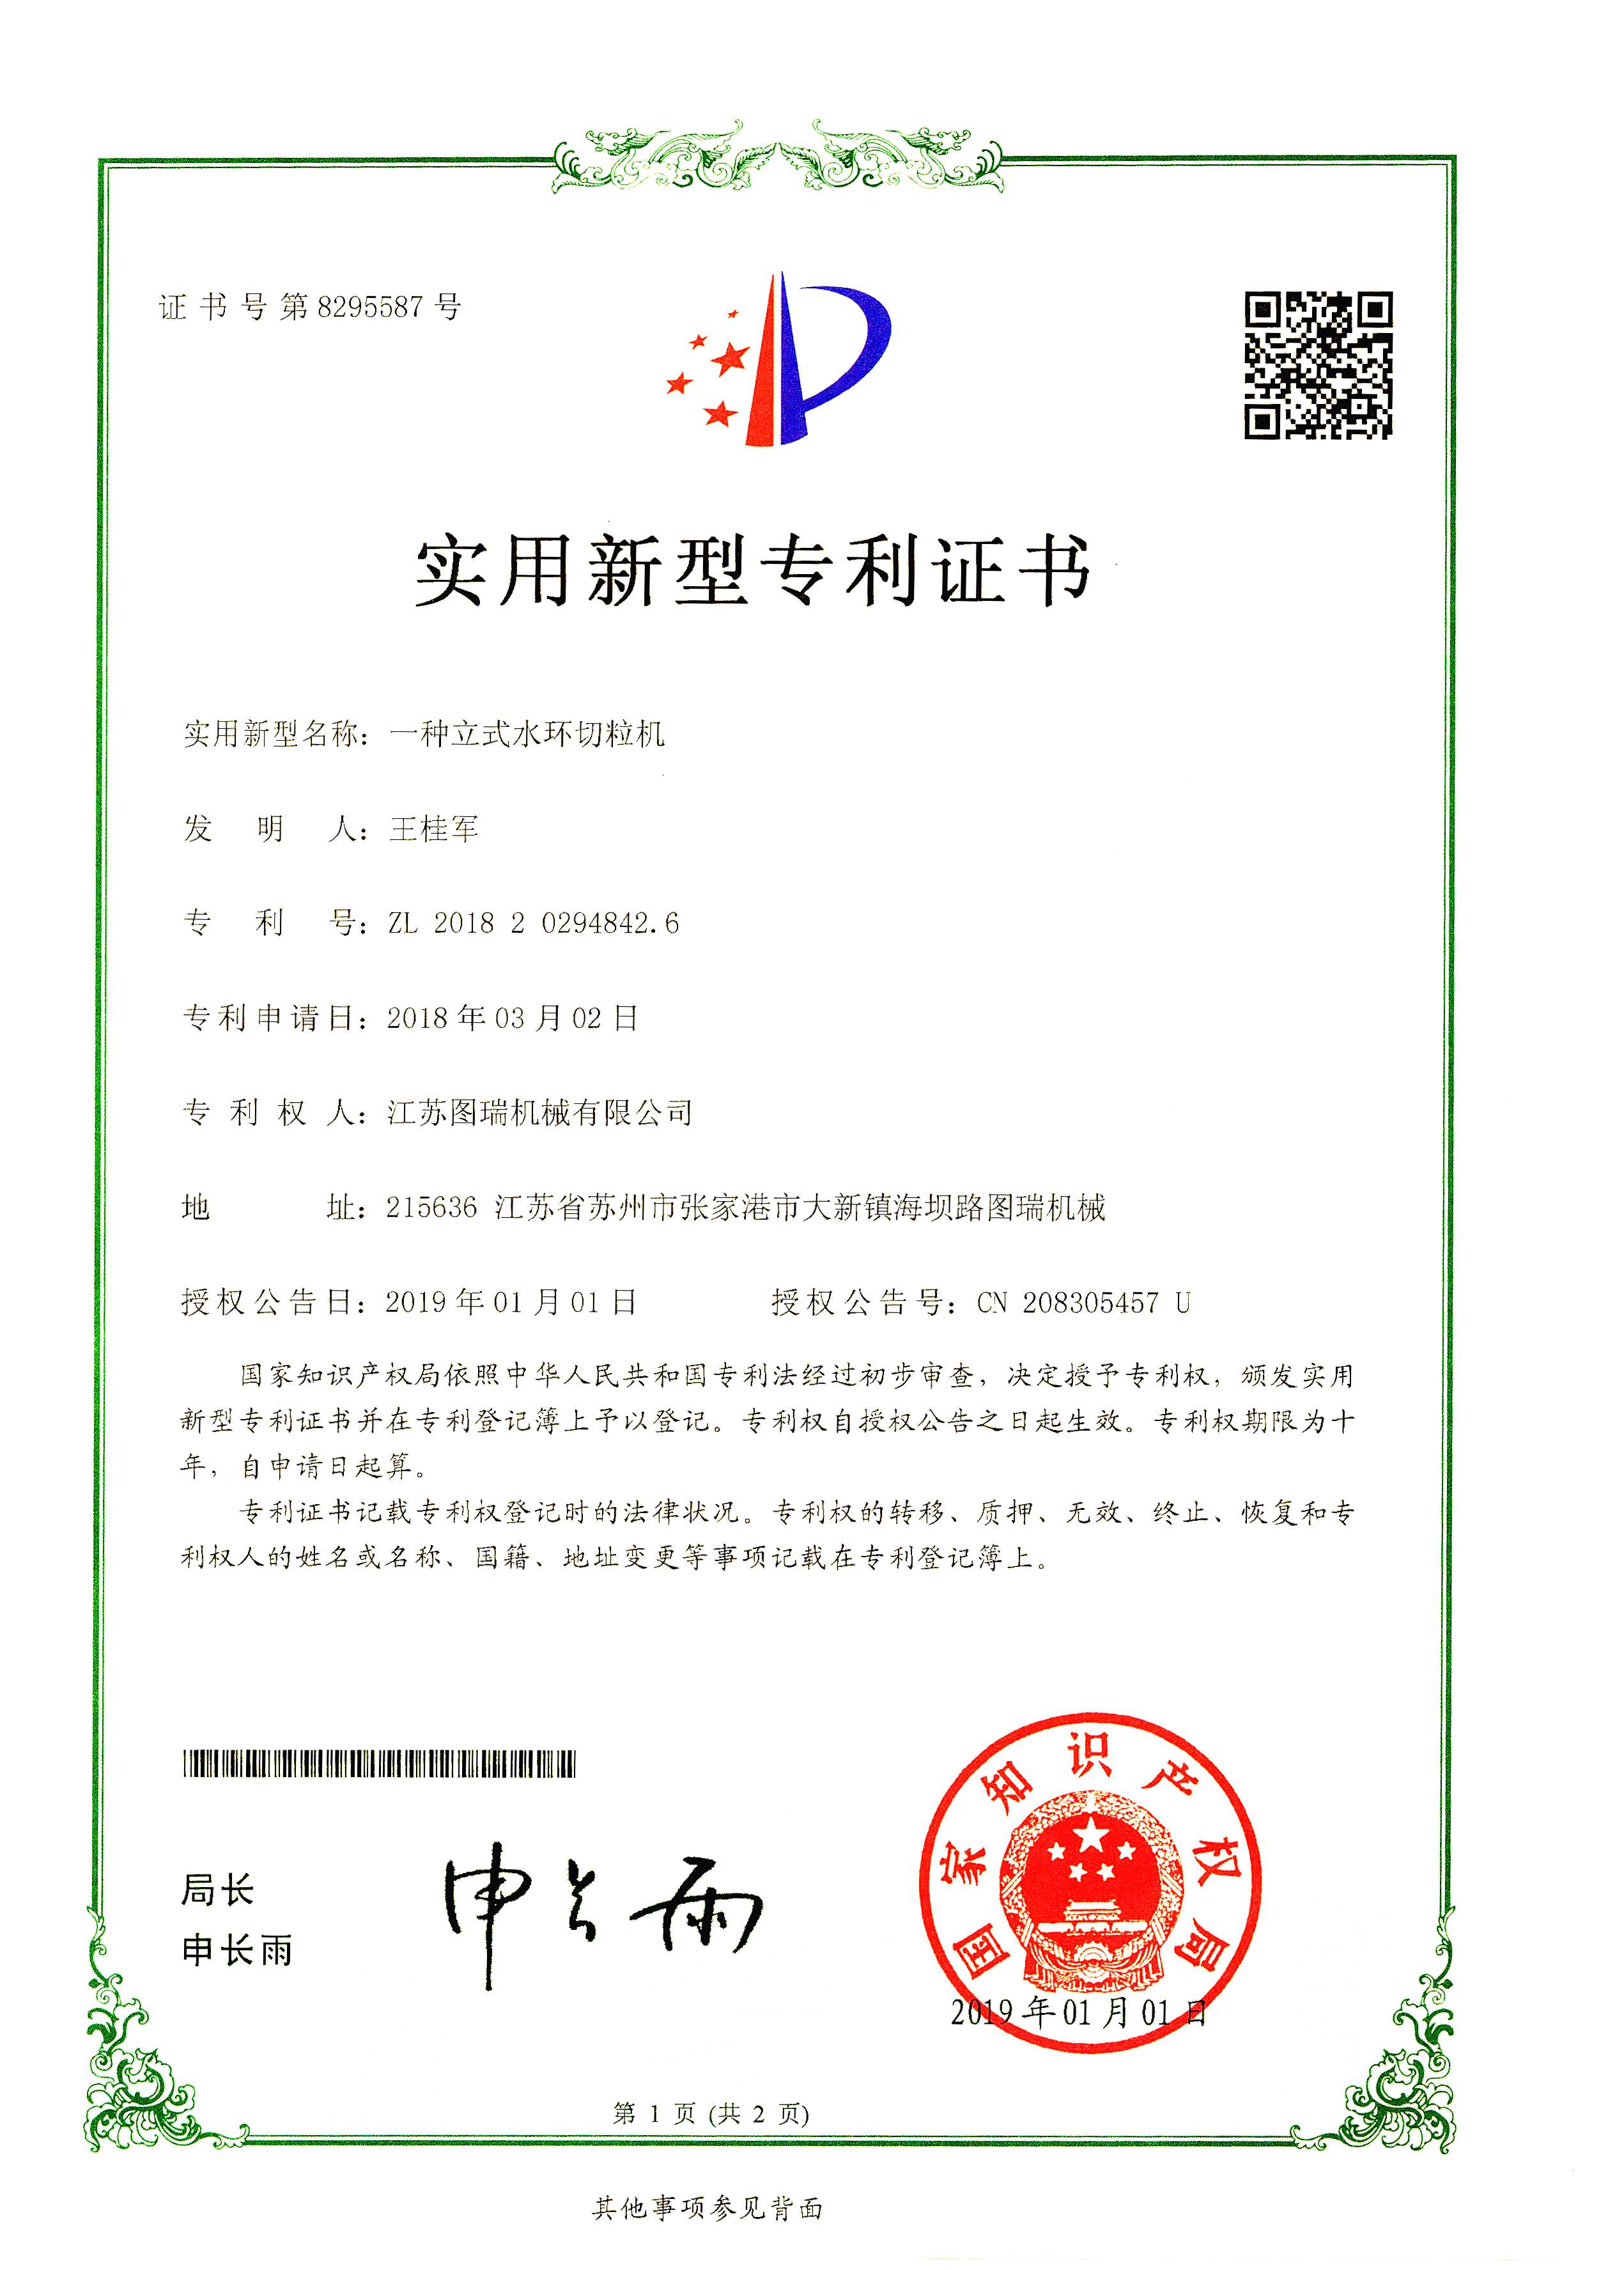 立式水环切粒机专利证书img001-1